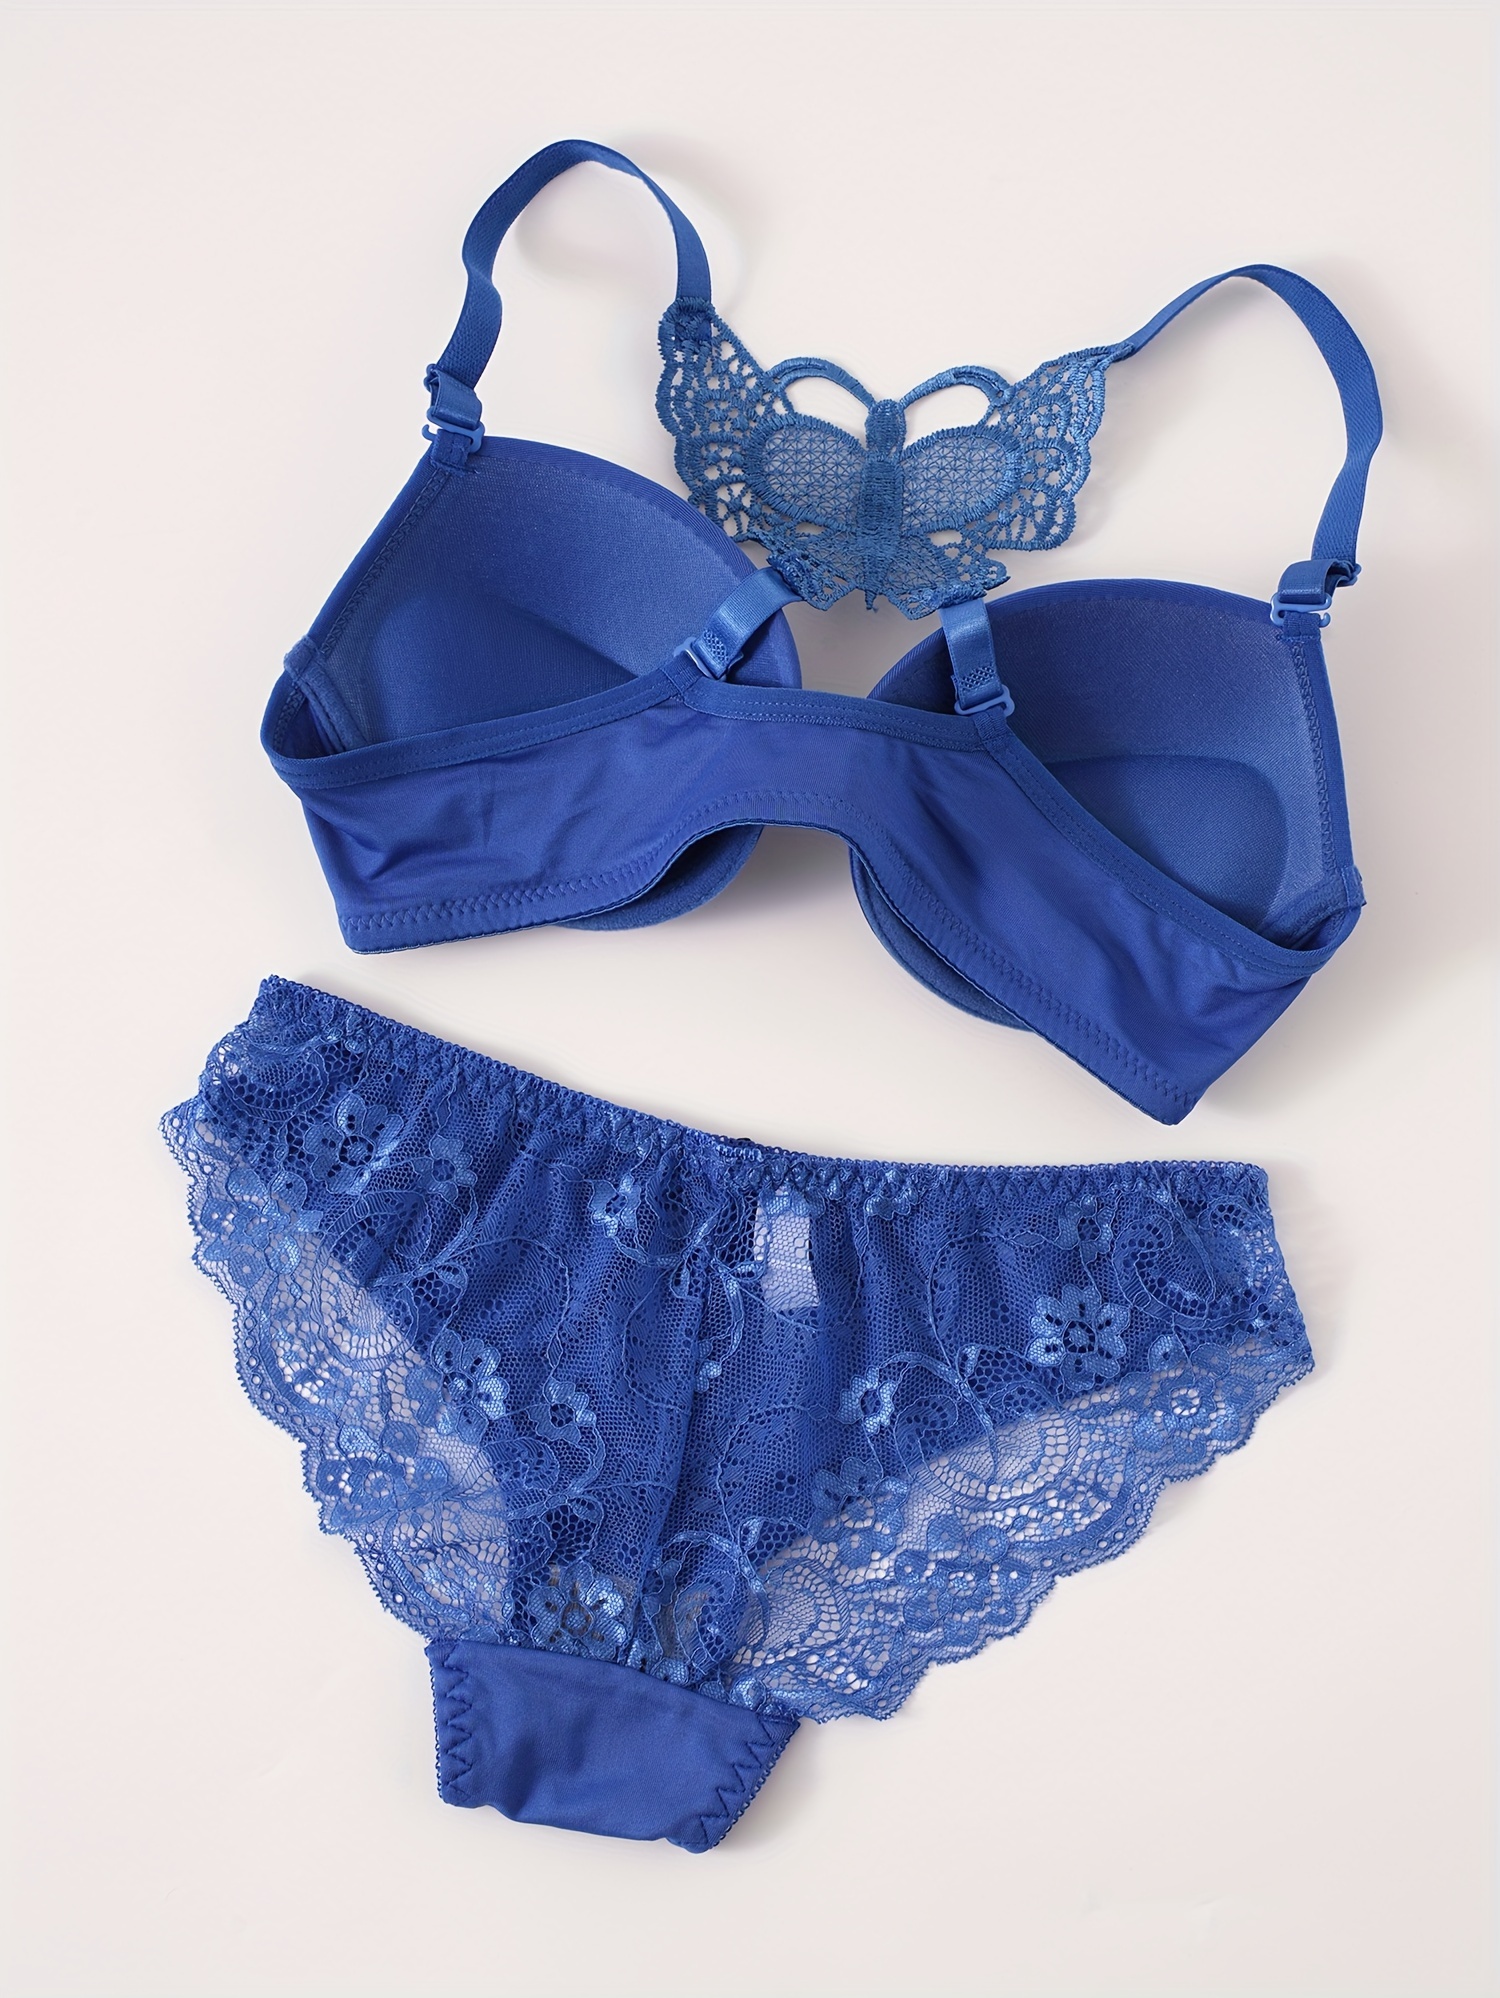 Plain Blue Lace Bra & Panty, Push Up Bra & Bow Decor Panties Lingerie Set,  Women's Lingerie & Underwear